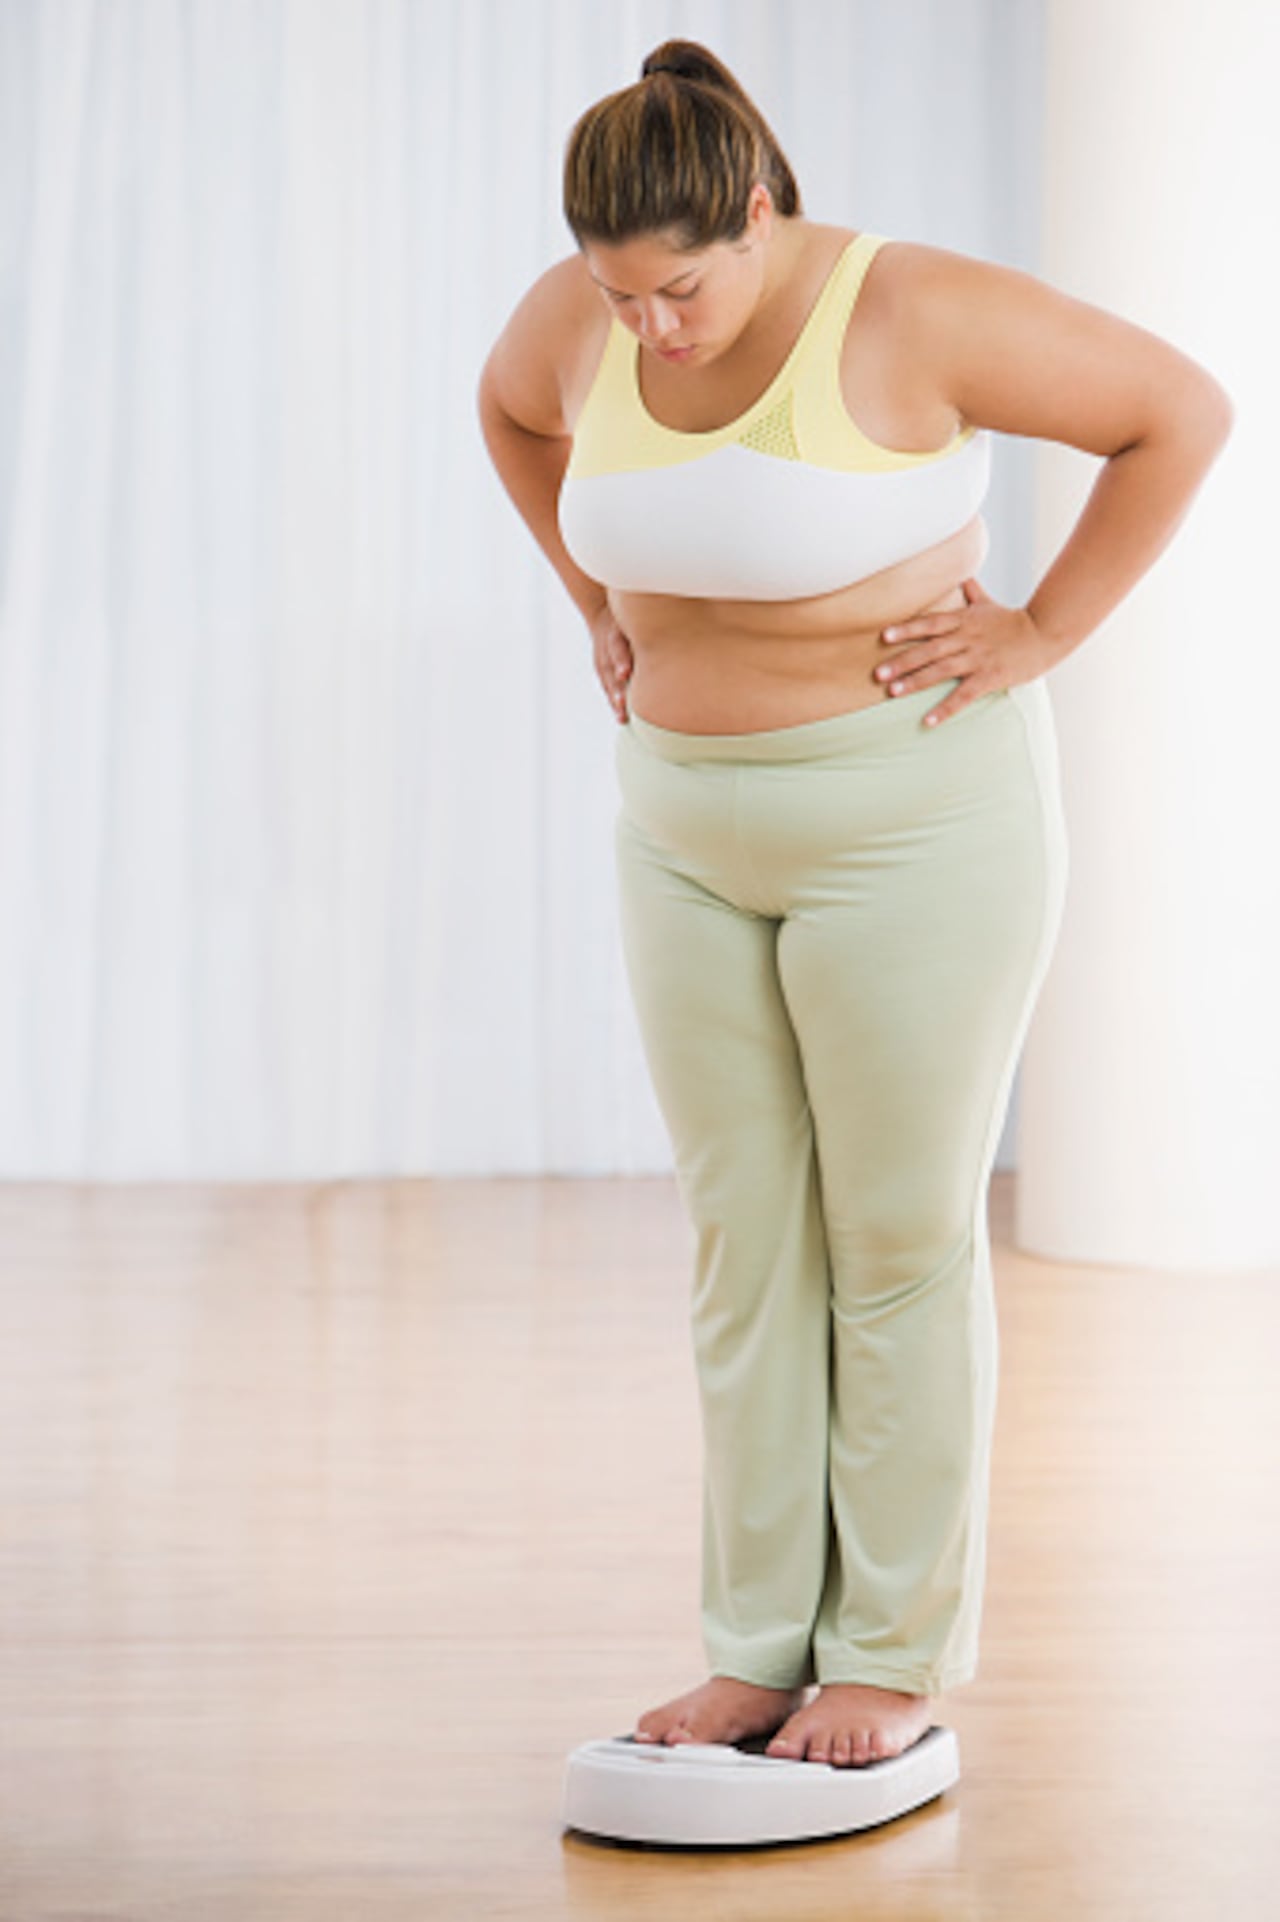 Uno de los efectos es el aumento de peso, debido a que, en muchos casos, puede pasar desapercibido, ya que suele coincidir con la menopausia.